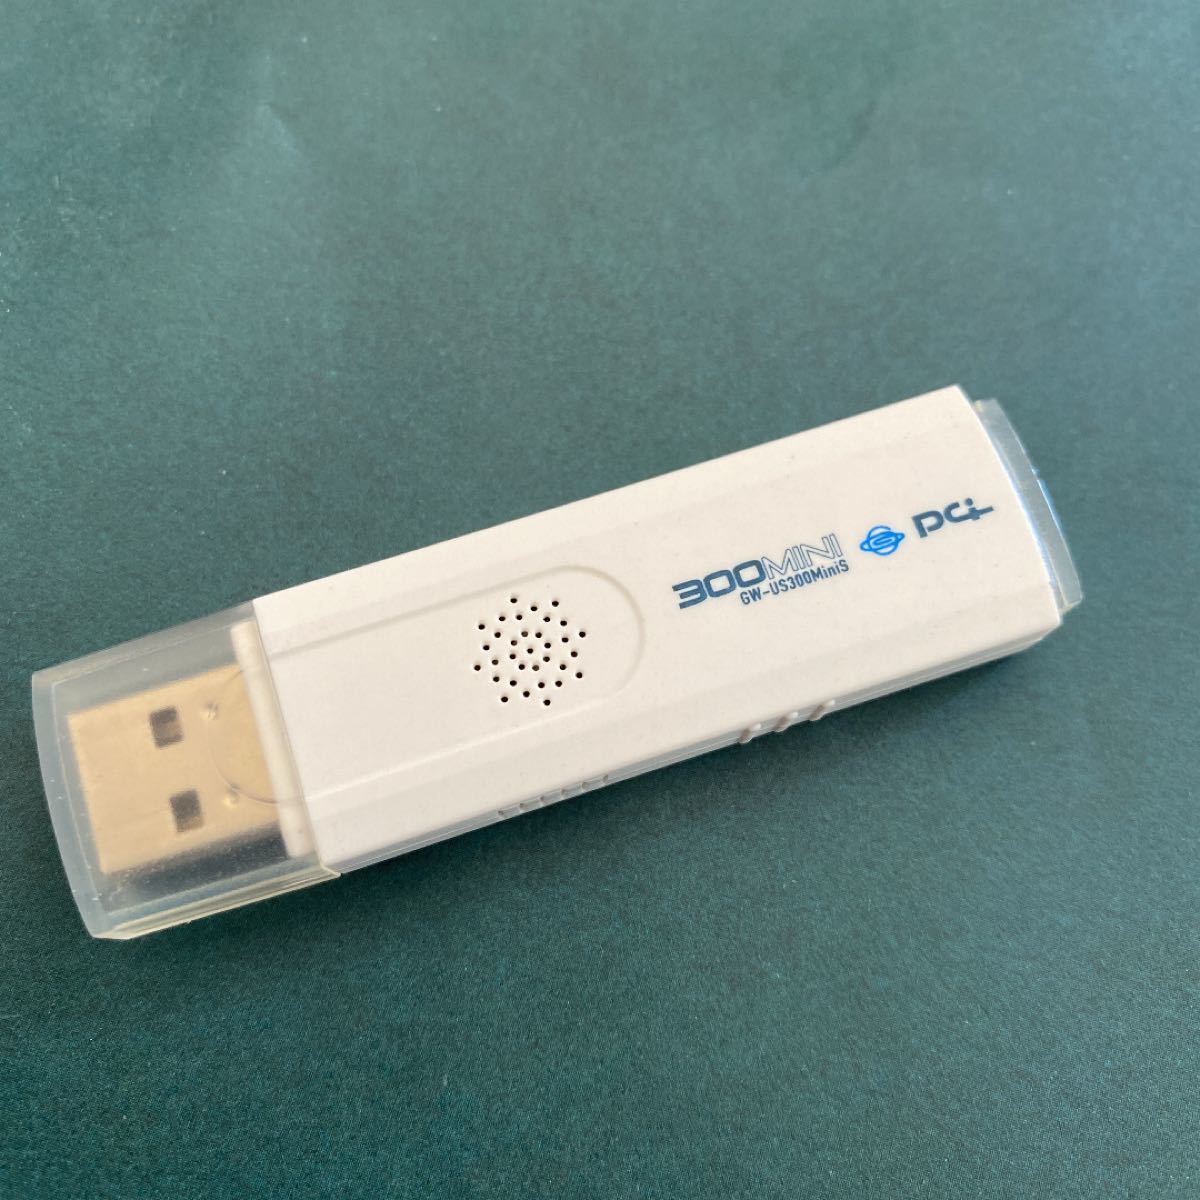 GW-US300MiniS USB無線LANアダプタ